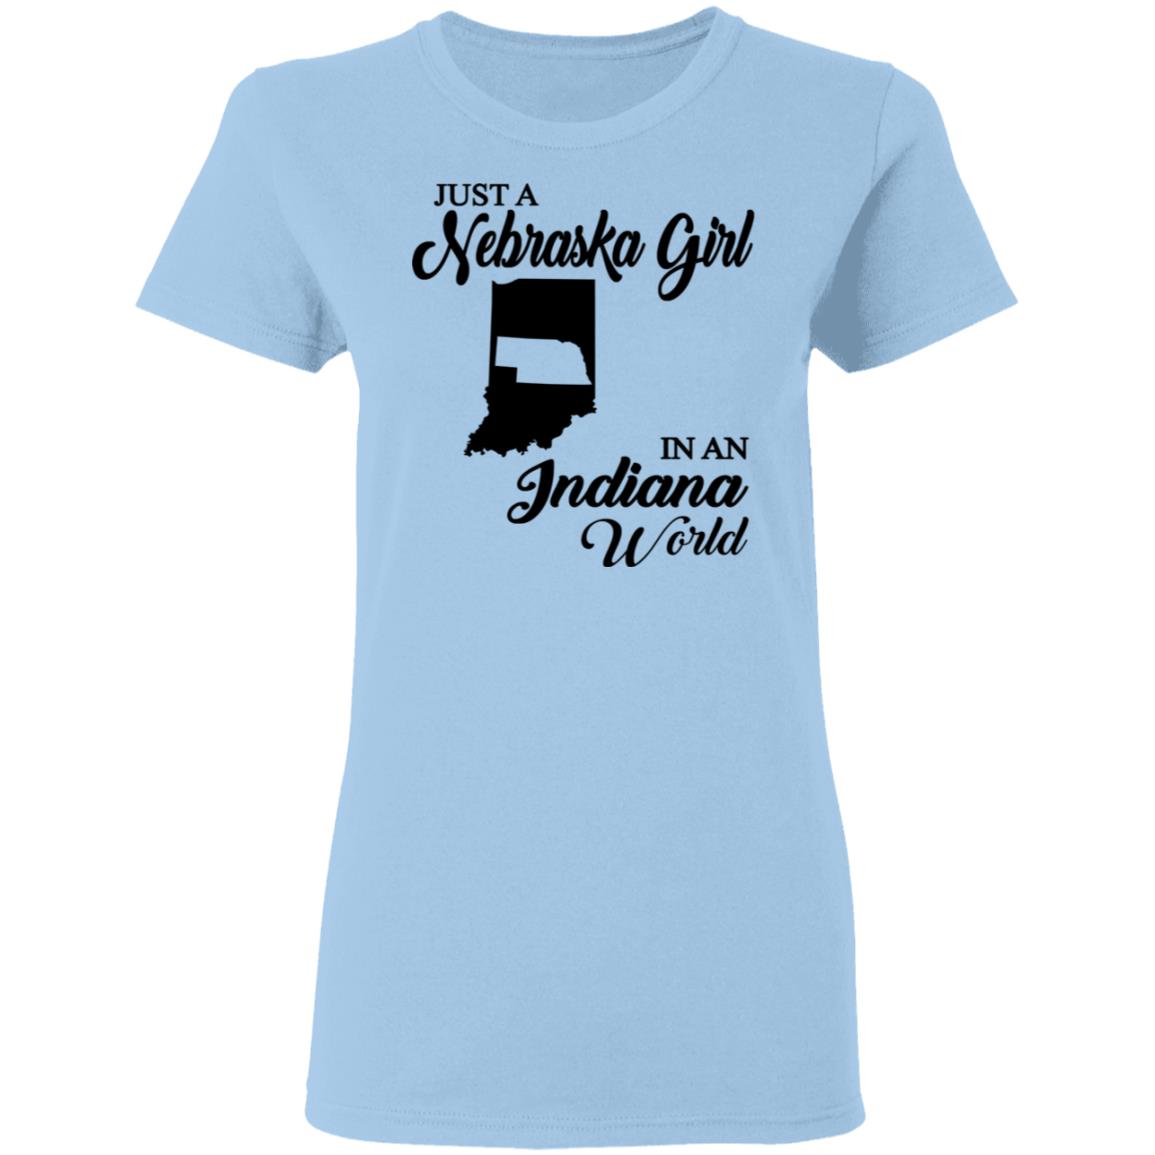 Just A Nebraska Girl In An Indiana World T-Shirt - T-shirt Teezalo